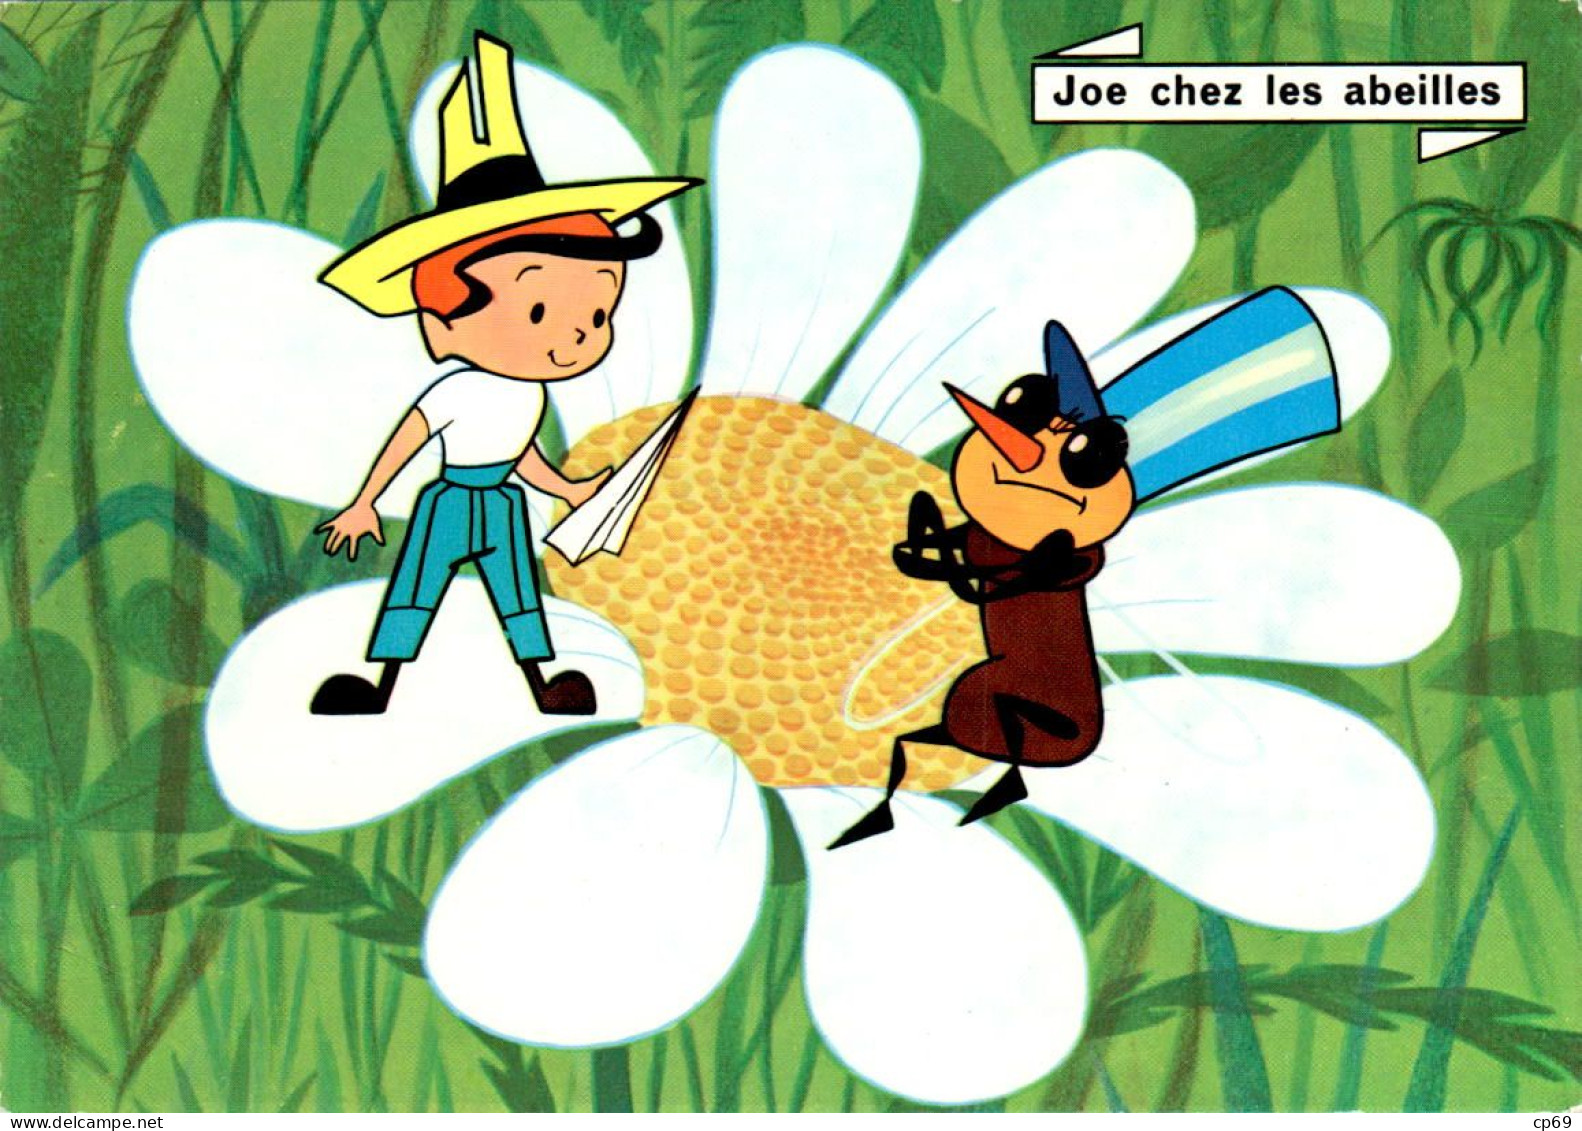 Les Aventures De Joe ORTF Jean Image Joe Chez Les Abeilles RTF Récréation N°10 Abeille Ape Bee En TB.Etat - TV Series